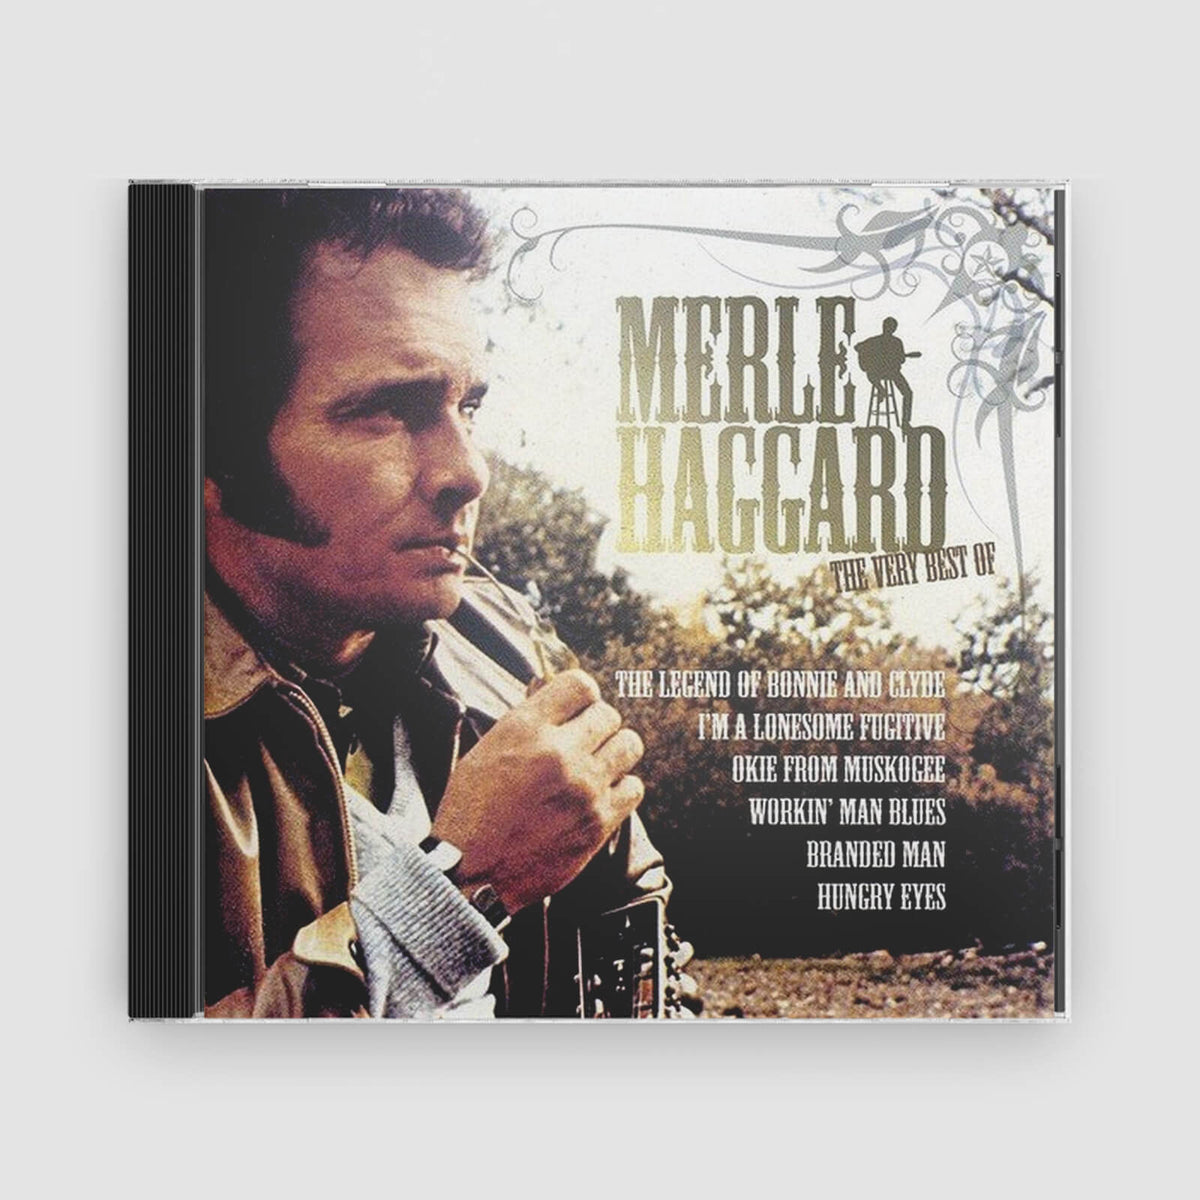 Merle Haggard : The Very Best Of Merle Haggard